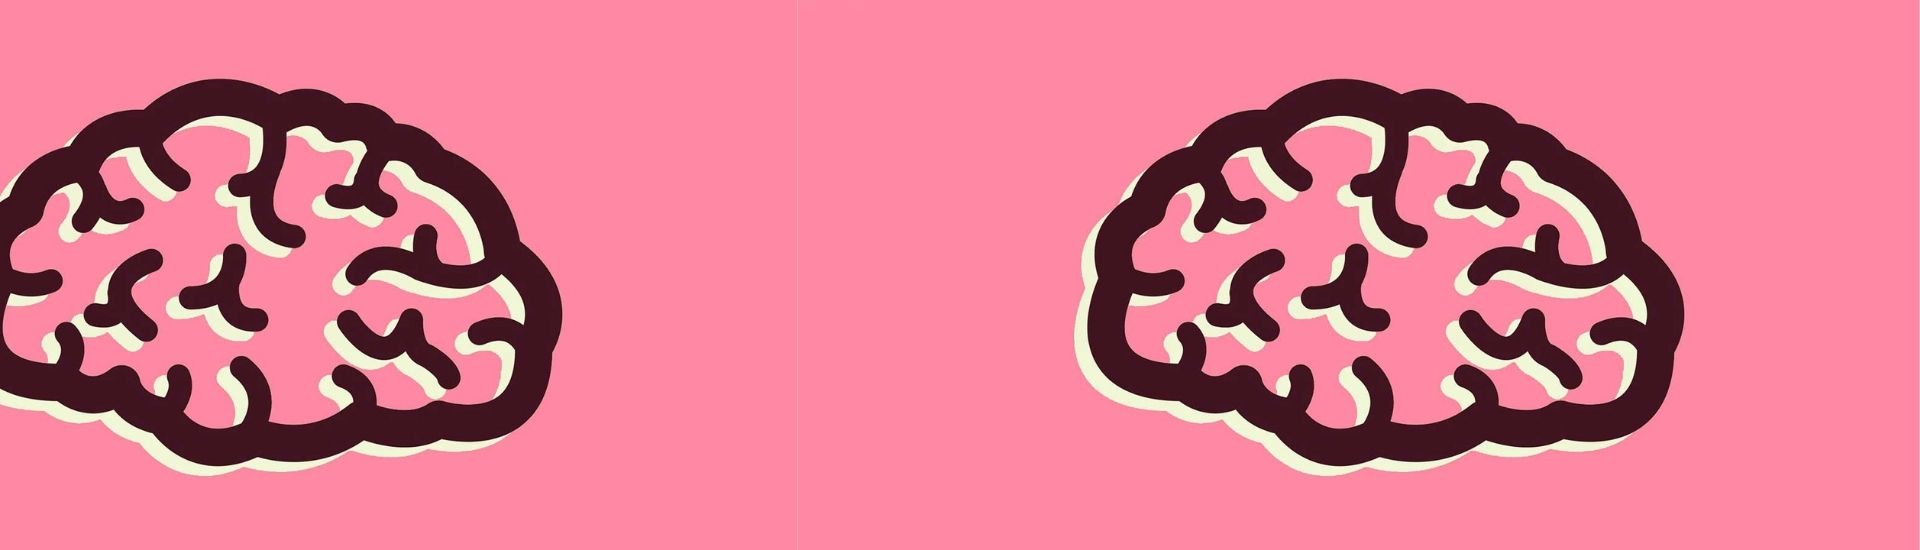 Ilustración del cerebro